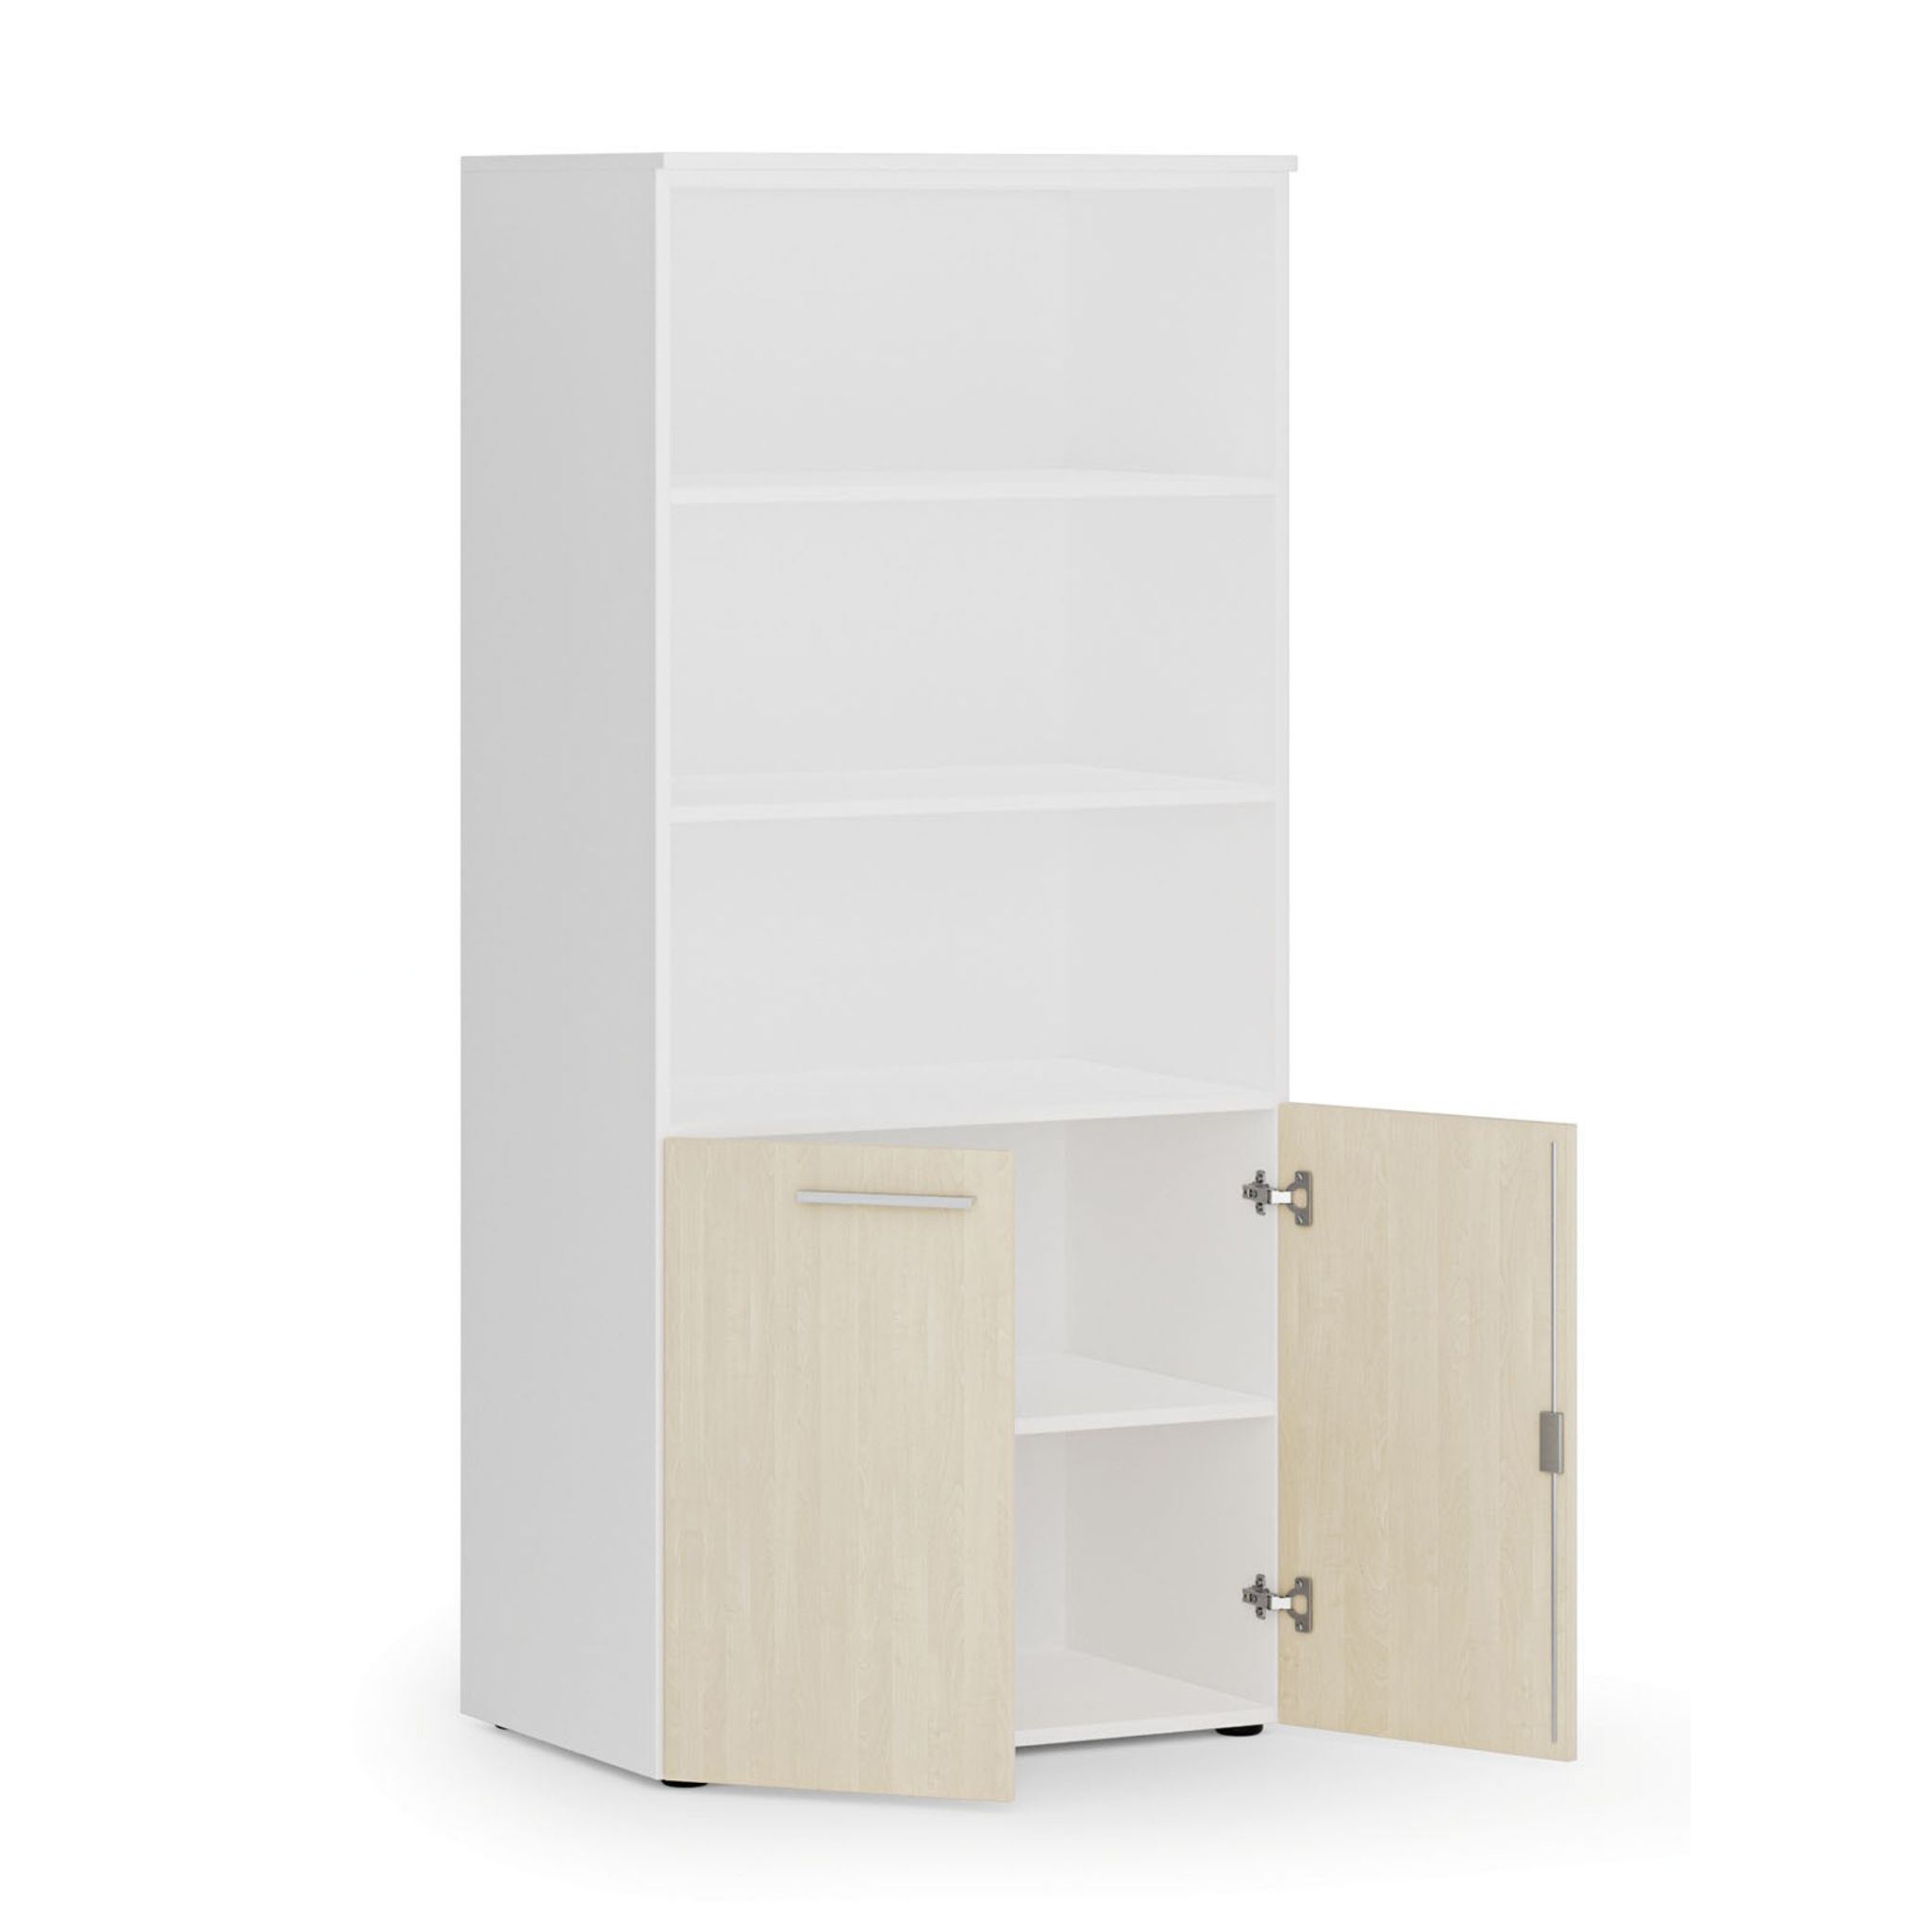 Kombinovaná kancelářská skříň PRIMO WHITE, nízké dveře, 1781 x 800 x 500 mm, bílá/bříza